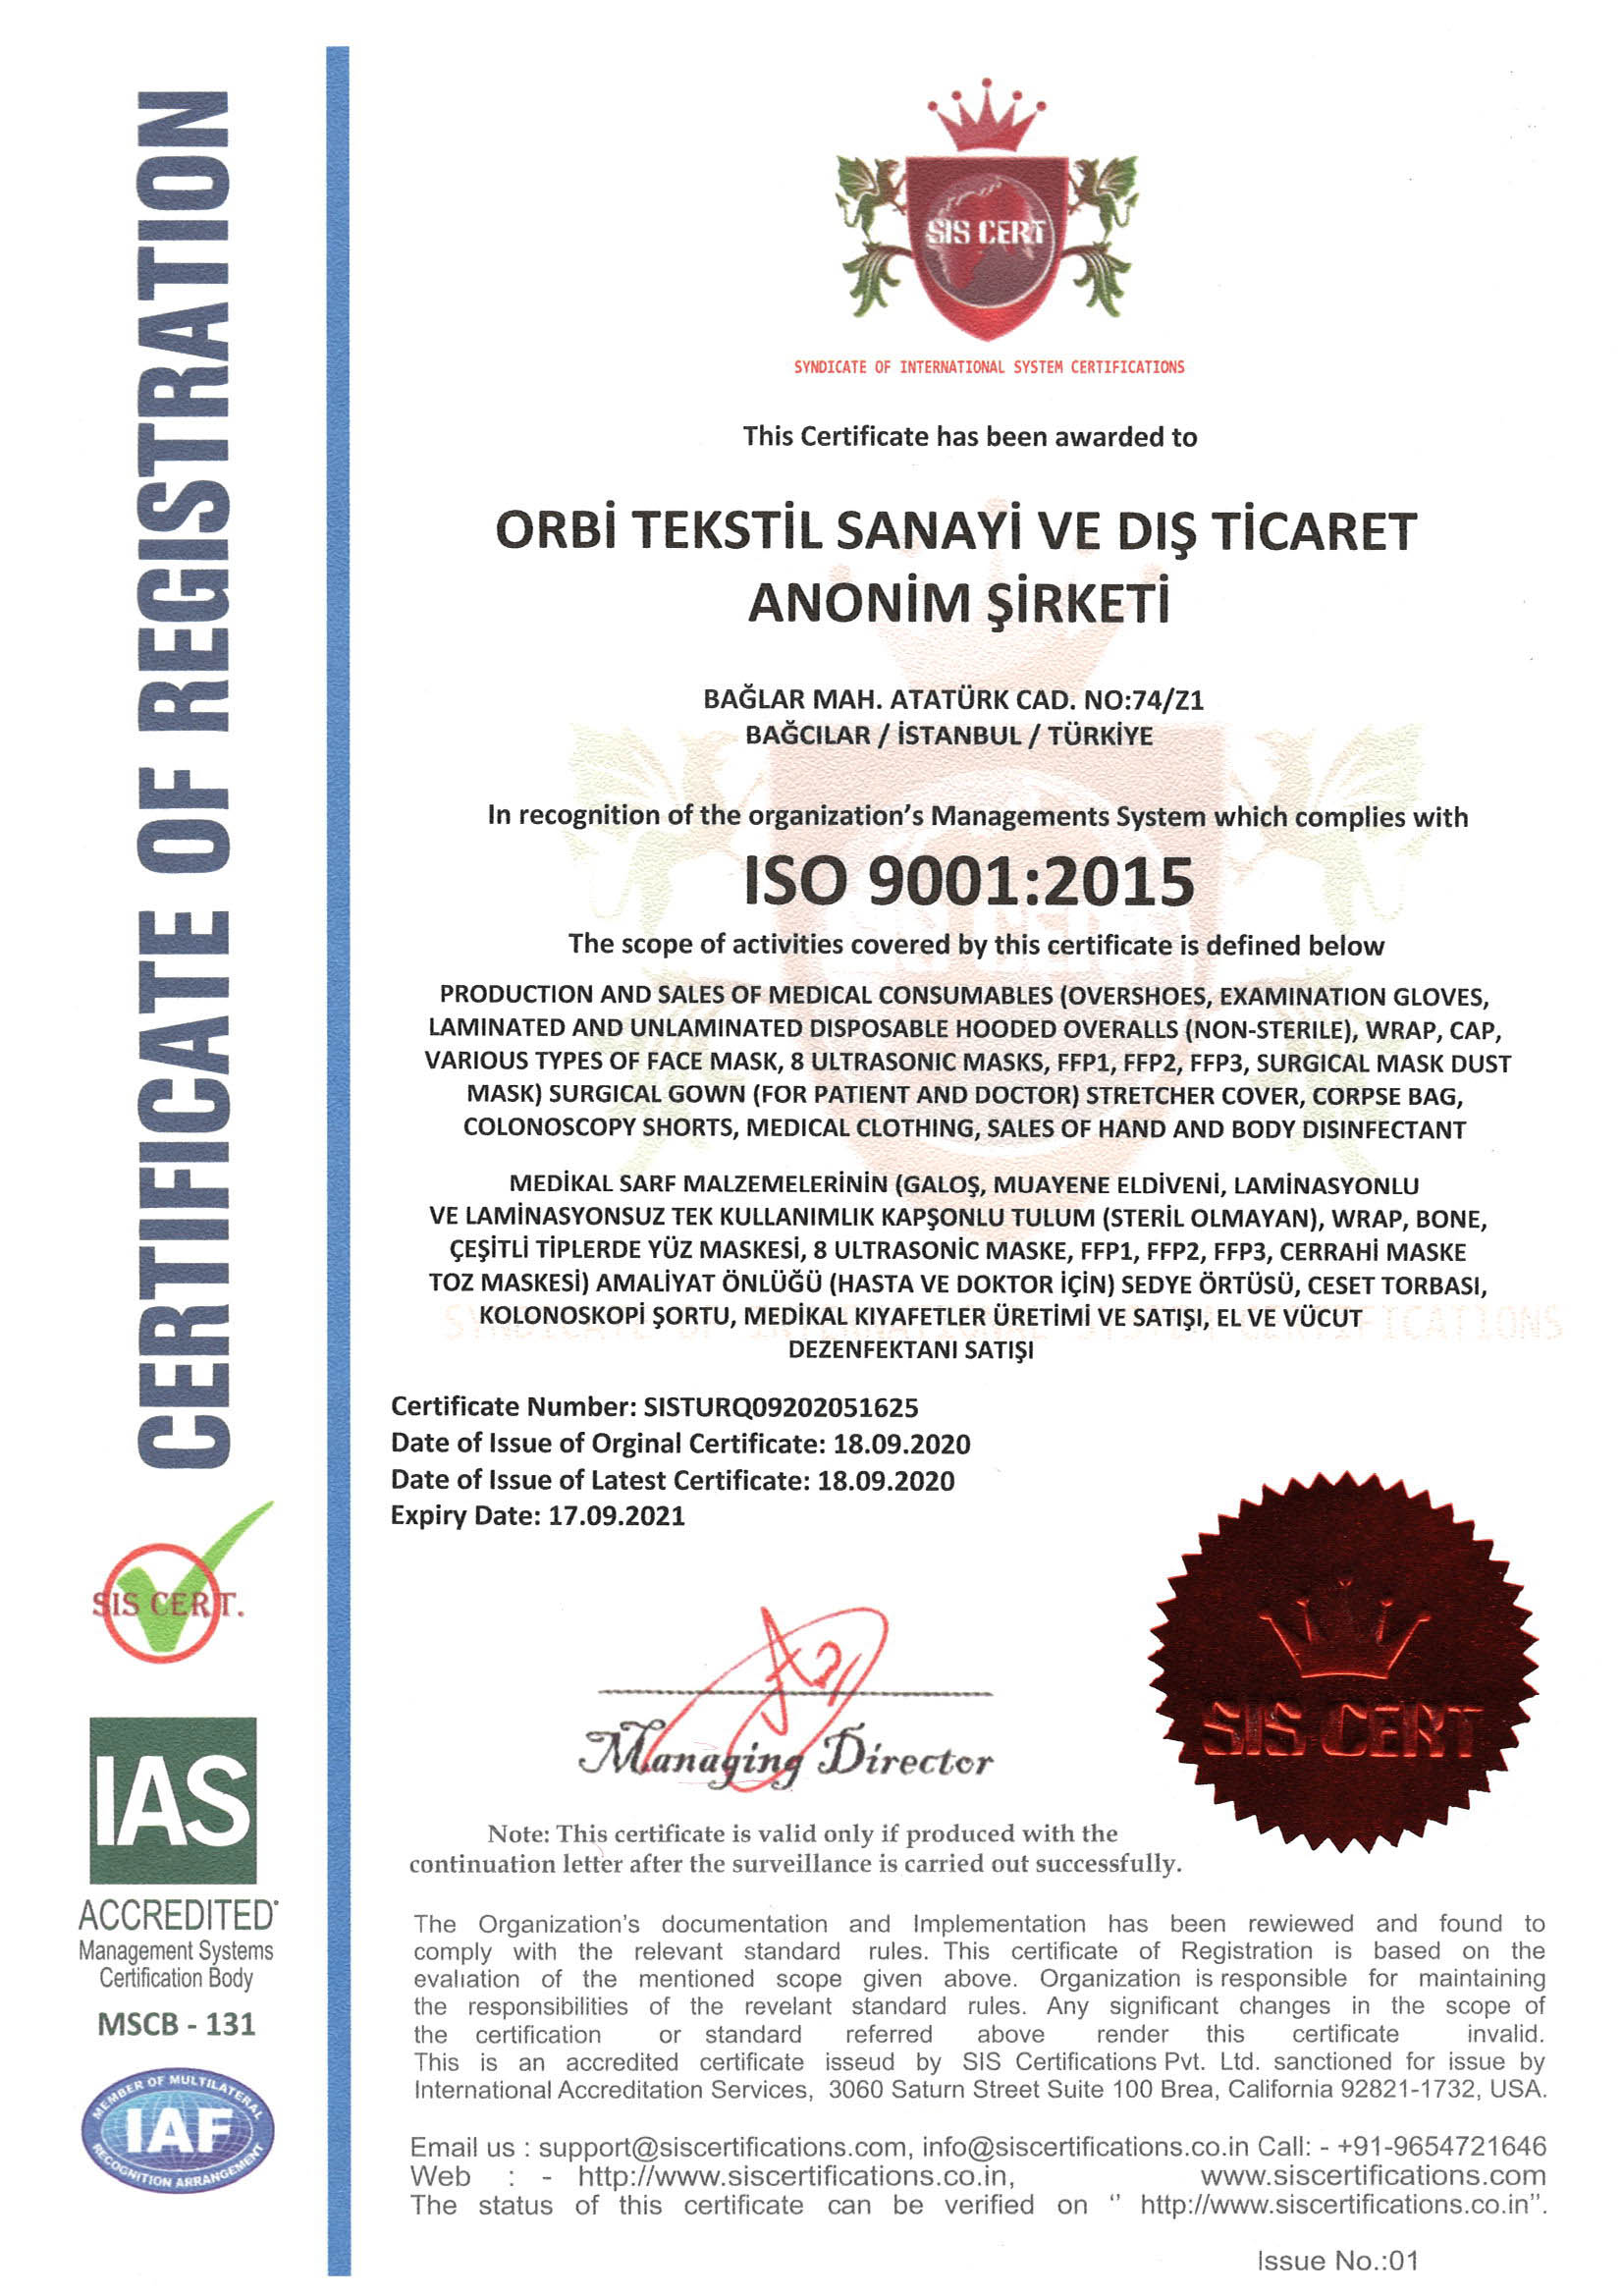 ORBİ ISO 9001